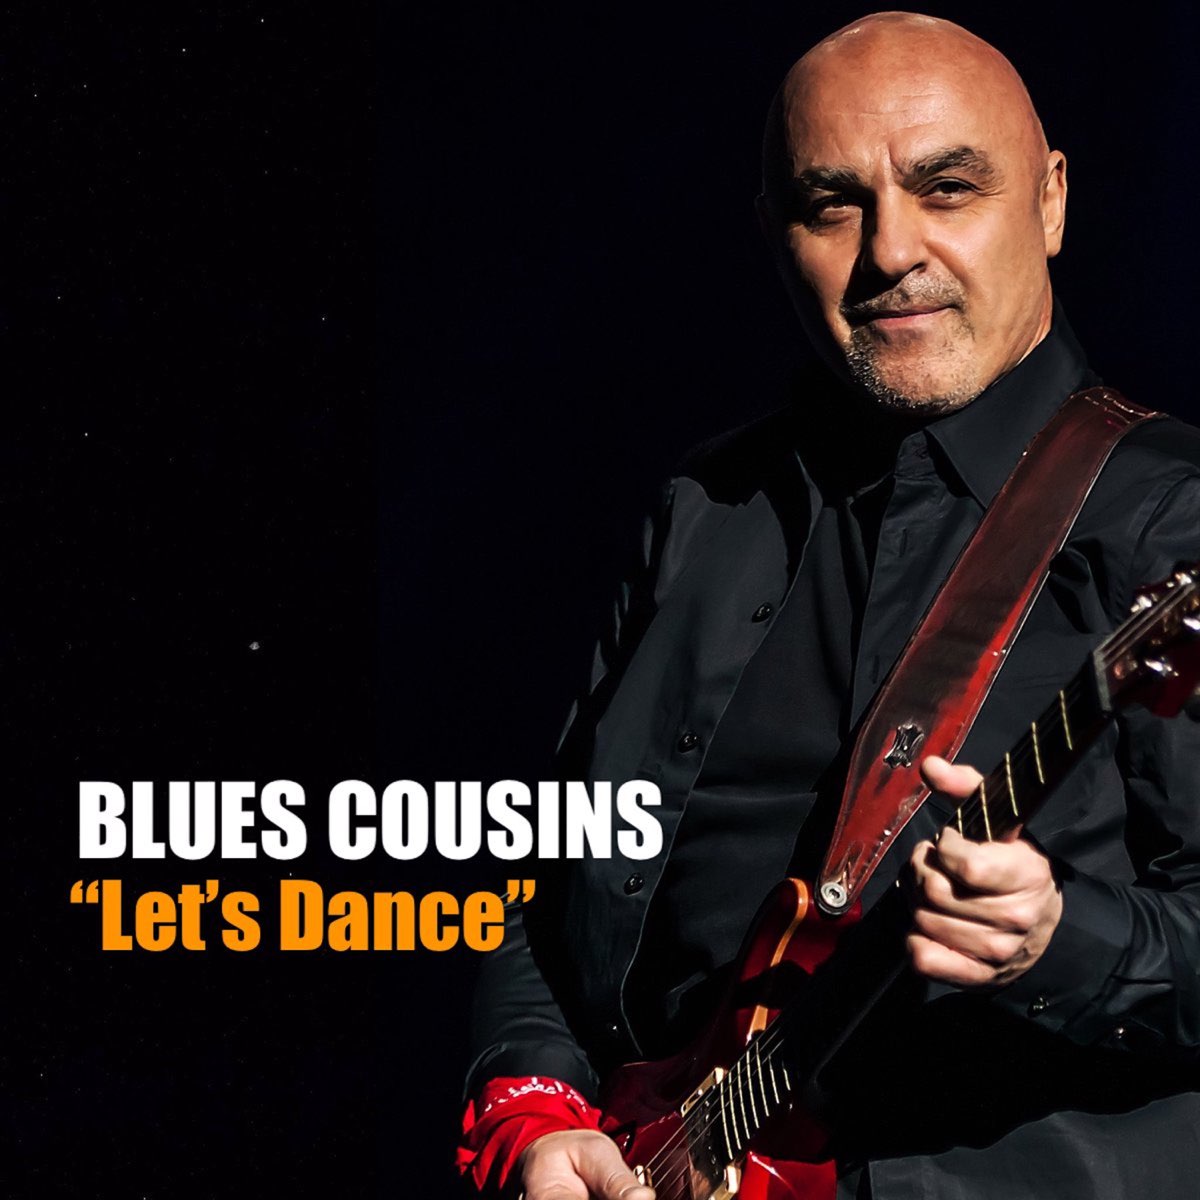 Let's Dance - Album by Blues Cousins - Apple Music